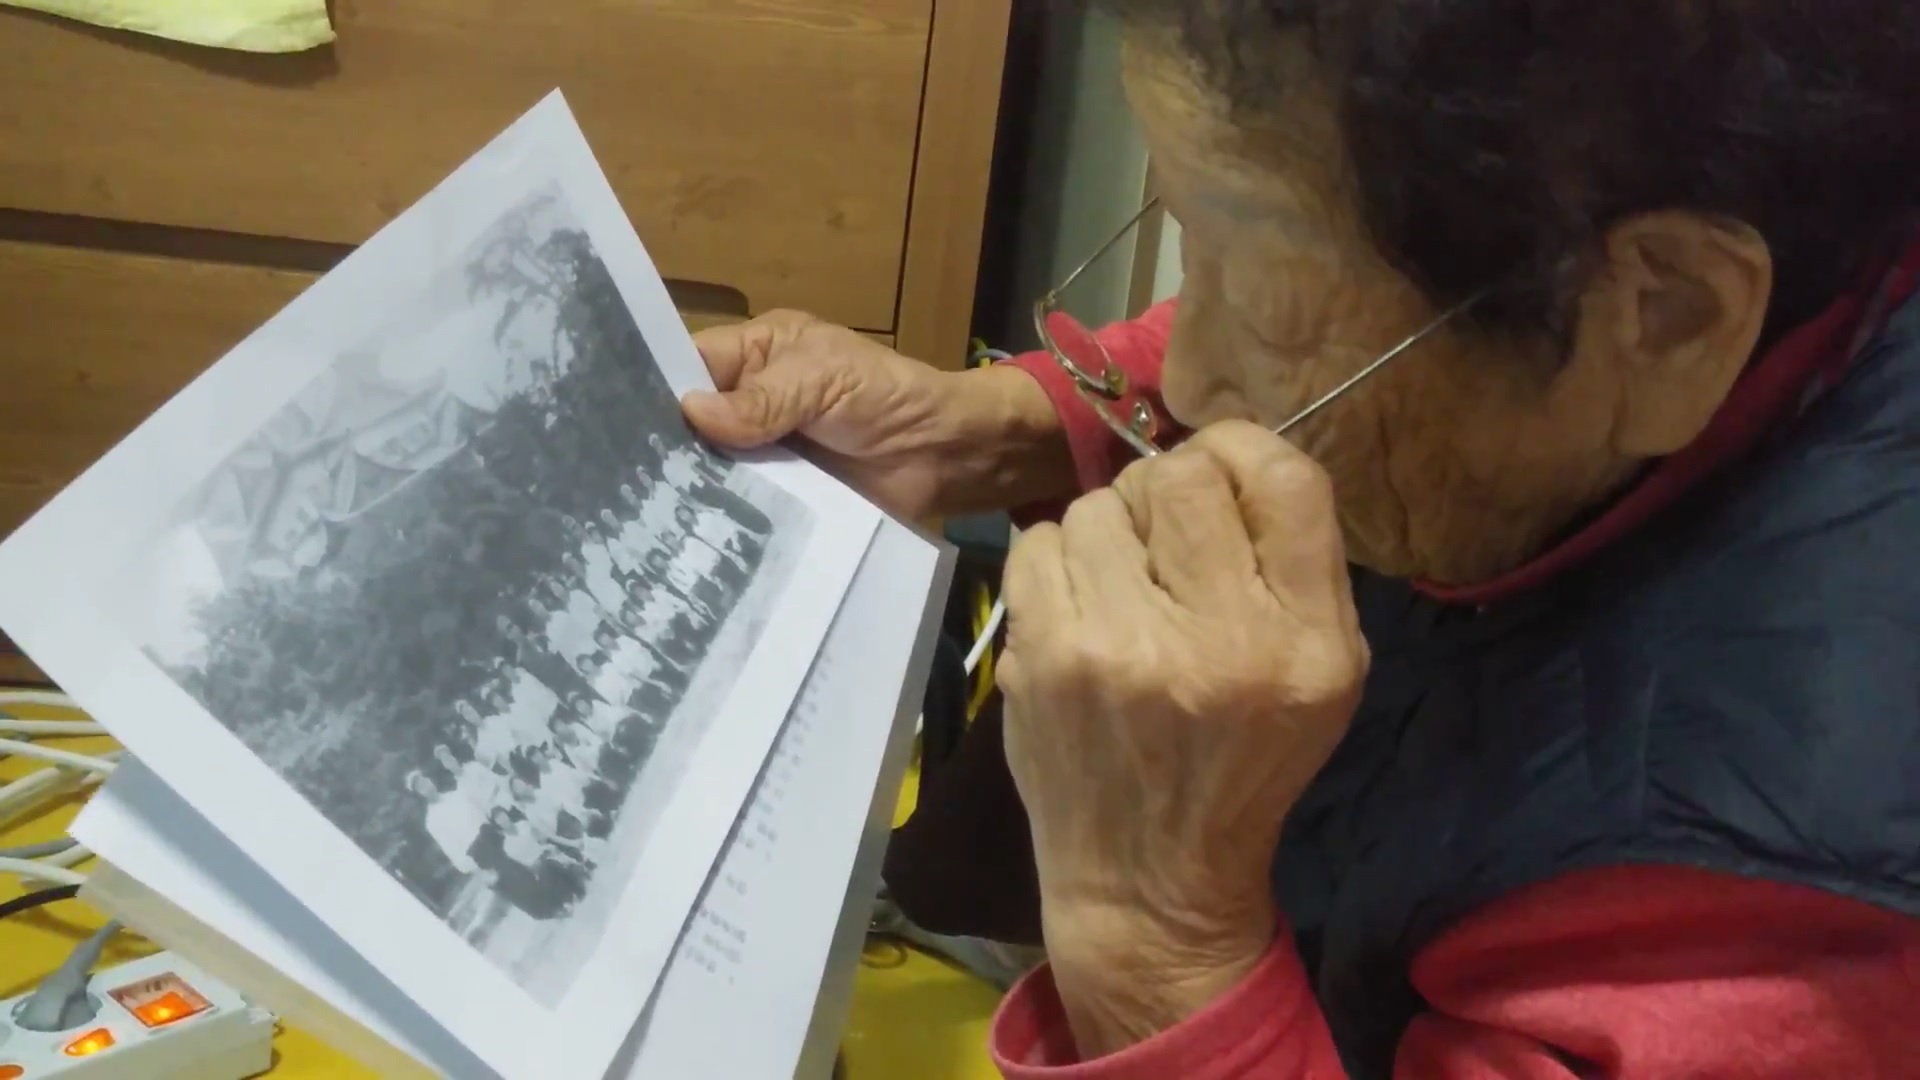  정신영 할머니가 1944년 조선여자근로정신대로 동원됐을 당시 나고야성 앞에서 찍은 사진을 유심히 살펴보고 있다.